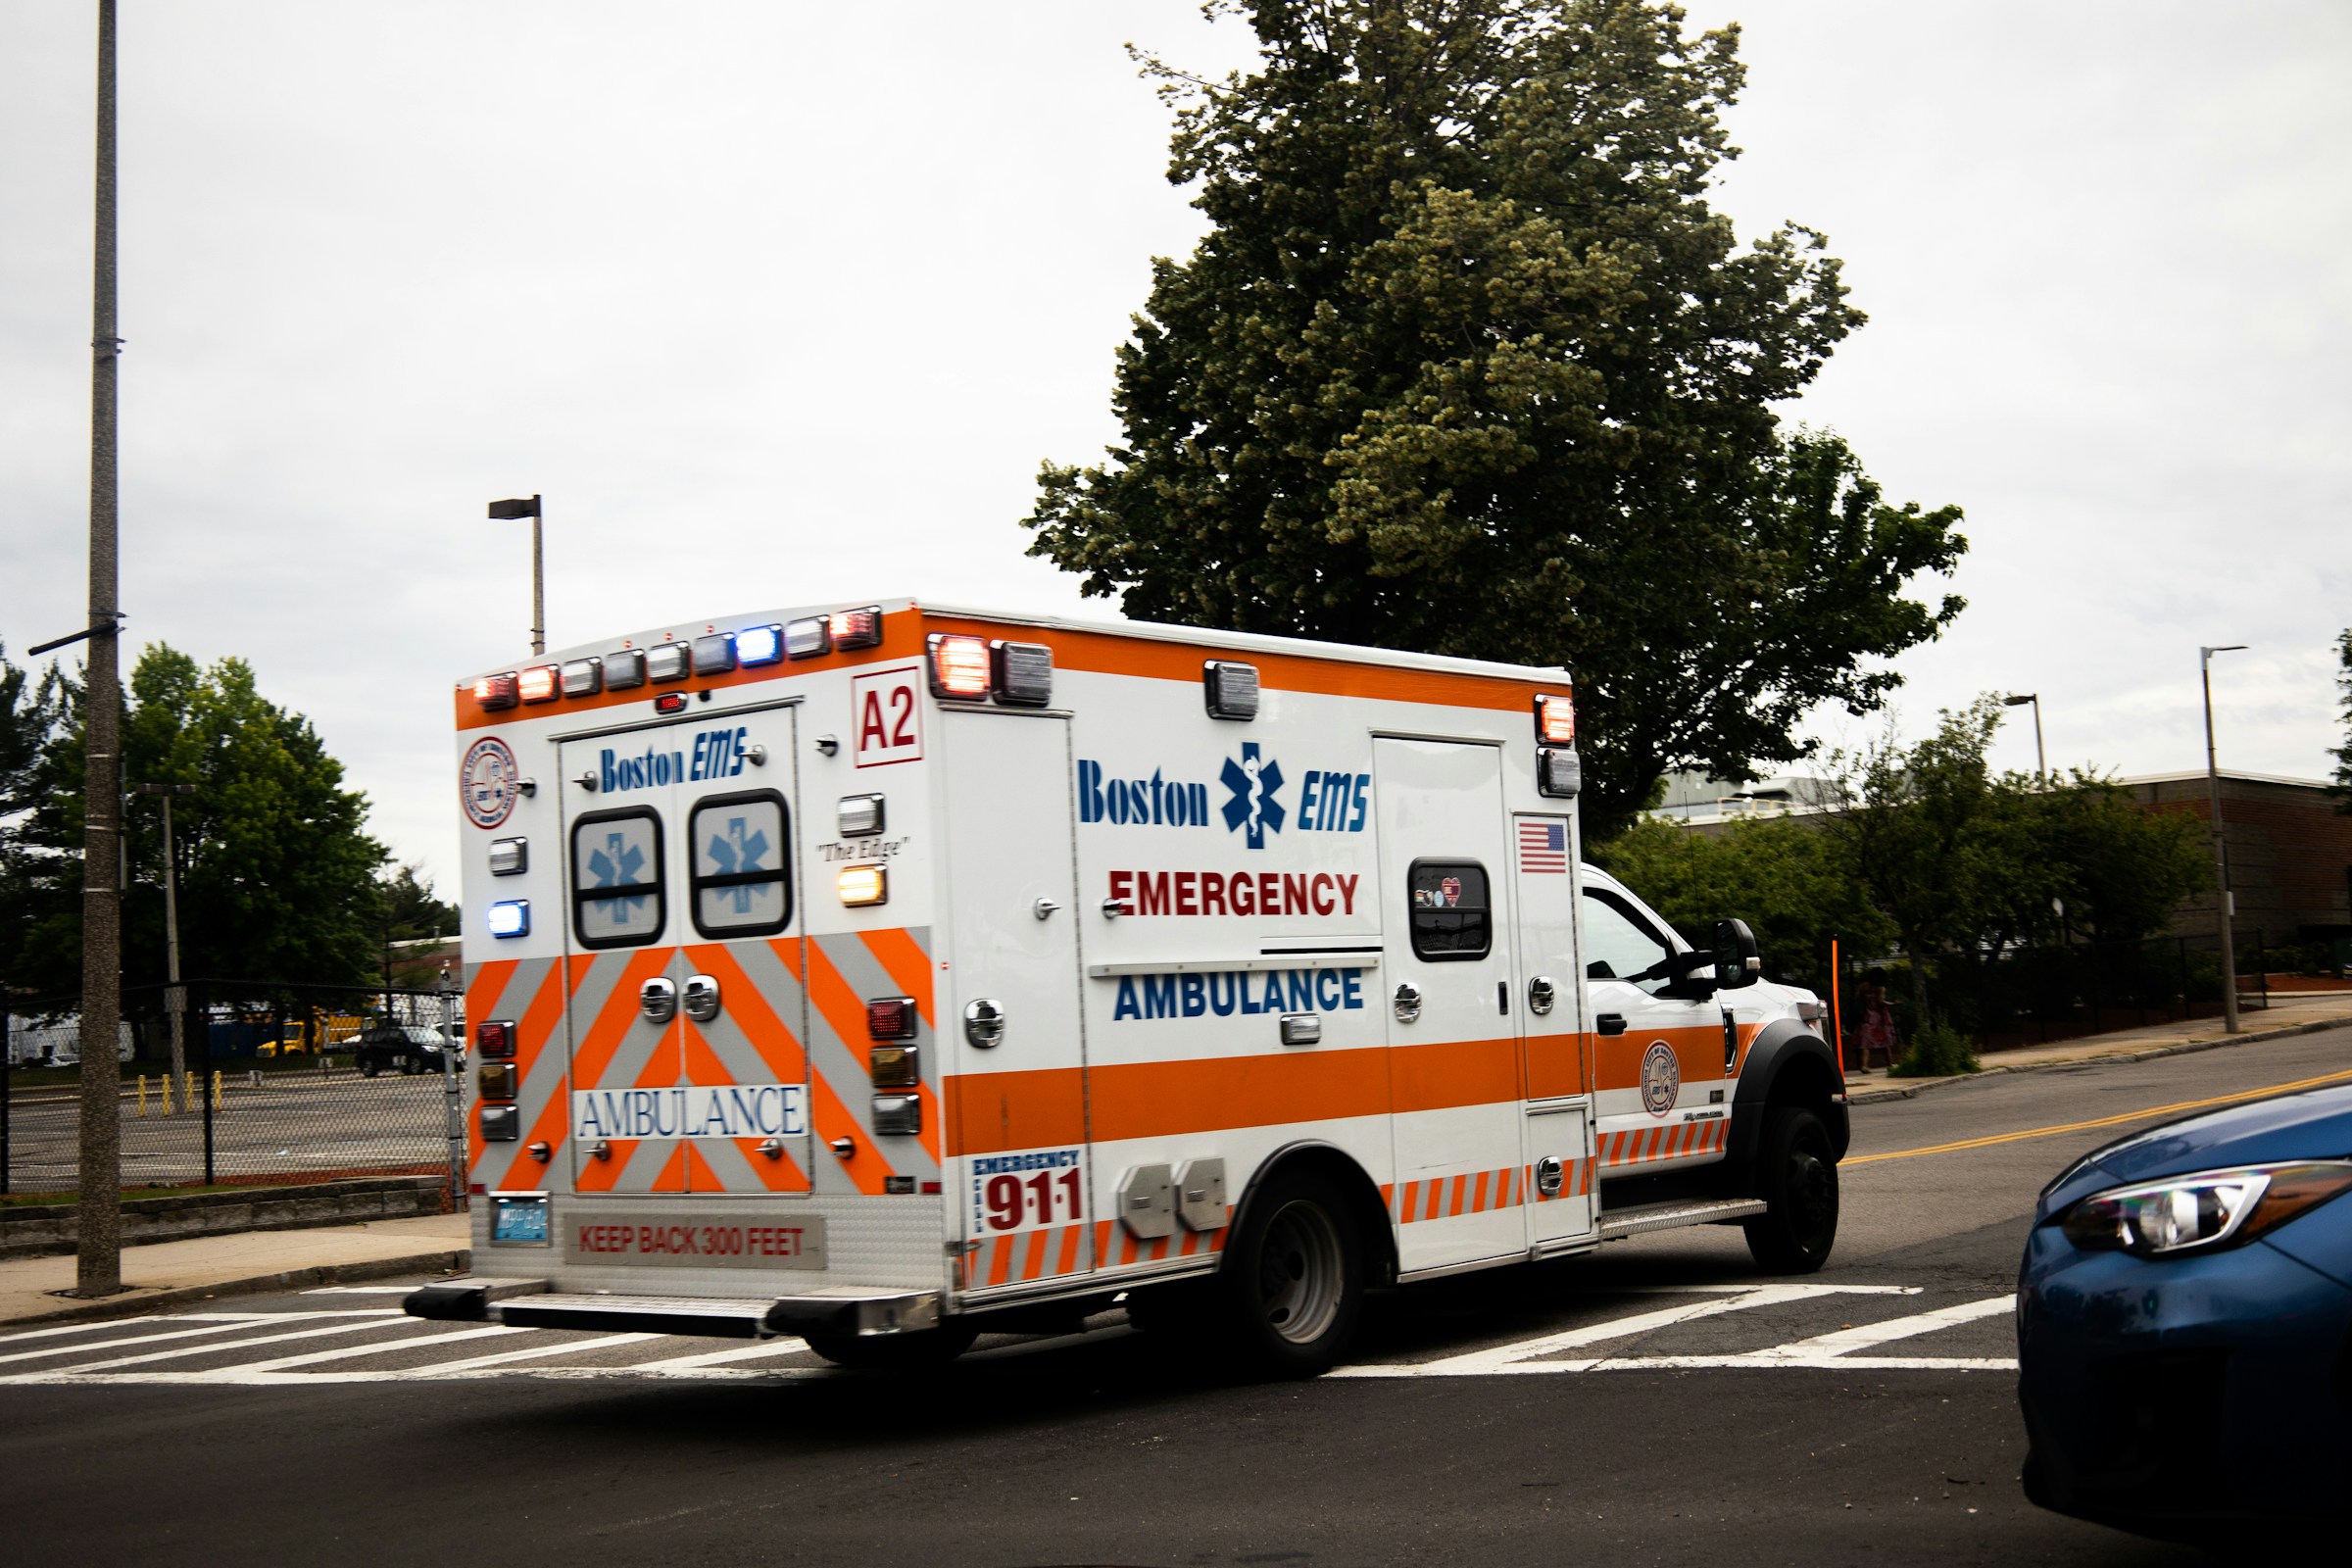 Une ambulance sur la route | Source : Unsplash